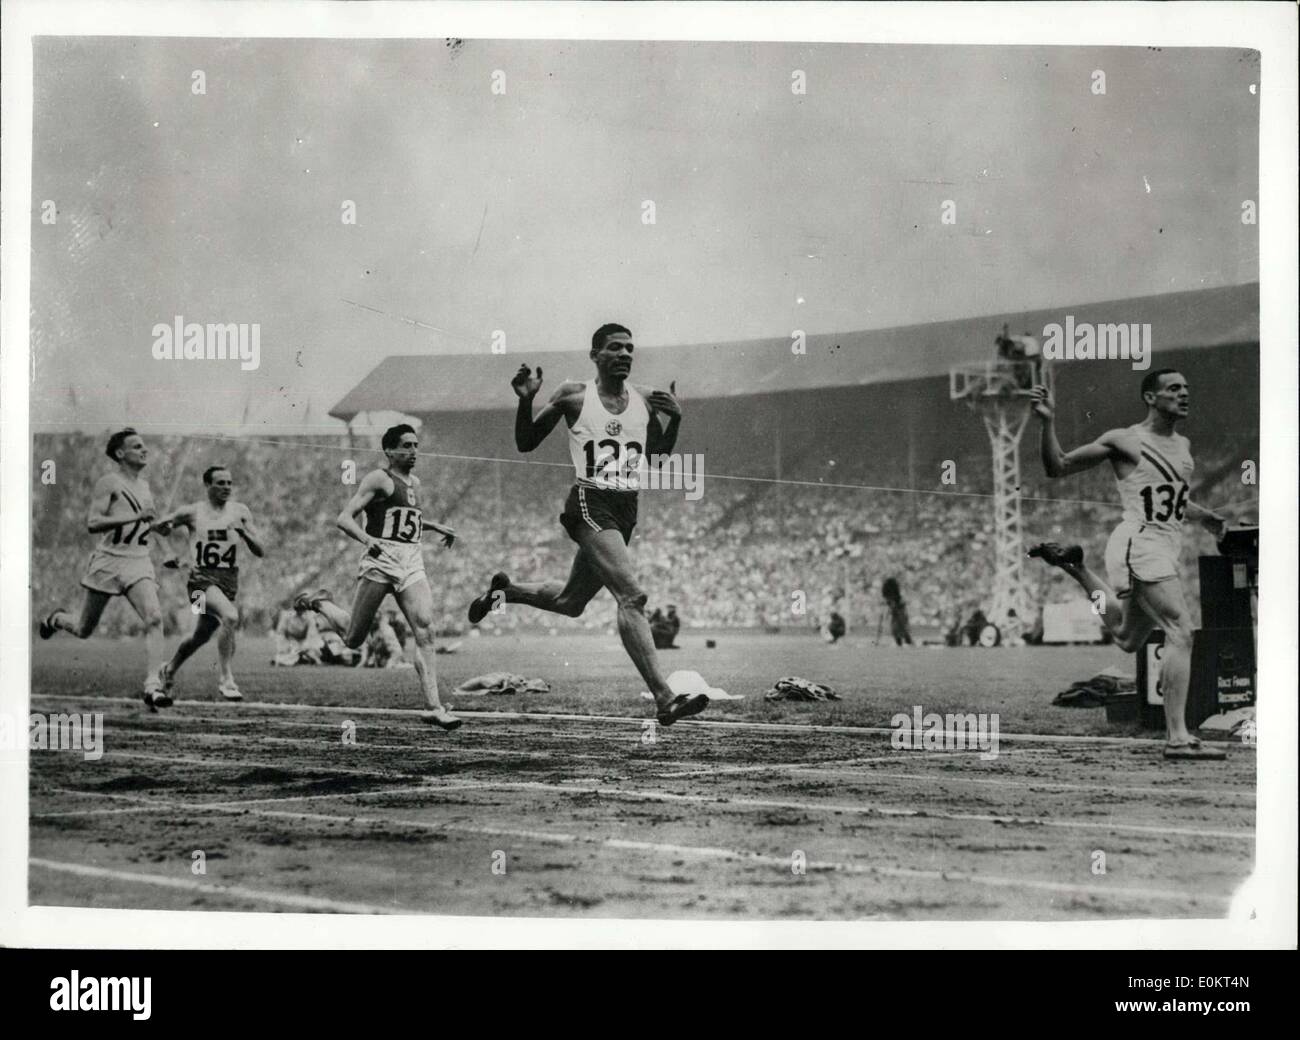 2. August 1948 - FINISH von 800 m Finale in WEMBLEY. Foto zeigt:-das Finish von 800 Metern Olympische Spiele Finale im Wembley-Stadion heute Nachmittag. Die Veranstaltung wurde von M.G. Whitfield der USA (Nr. 136), gewonnen, die einen neuen Olympischen Rekord eingerichtet. Zweiter wurde A.S. Wint von Jamaika (Nr. 122). und dritten Marcel Hansenne von Frankreich (no.151). Die ersten drei alle brach den bisherigen Olympischen Rekord von 1 min. 49,8 Sek. in Los Angeles 1932. Vierter wurde abschließend H.C. Barten der U.S.A. (Nr. 172) und fünften I. Benotson von Schweden (Nr. 164) Stockfoto